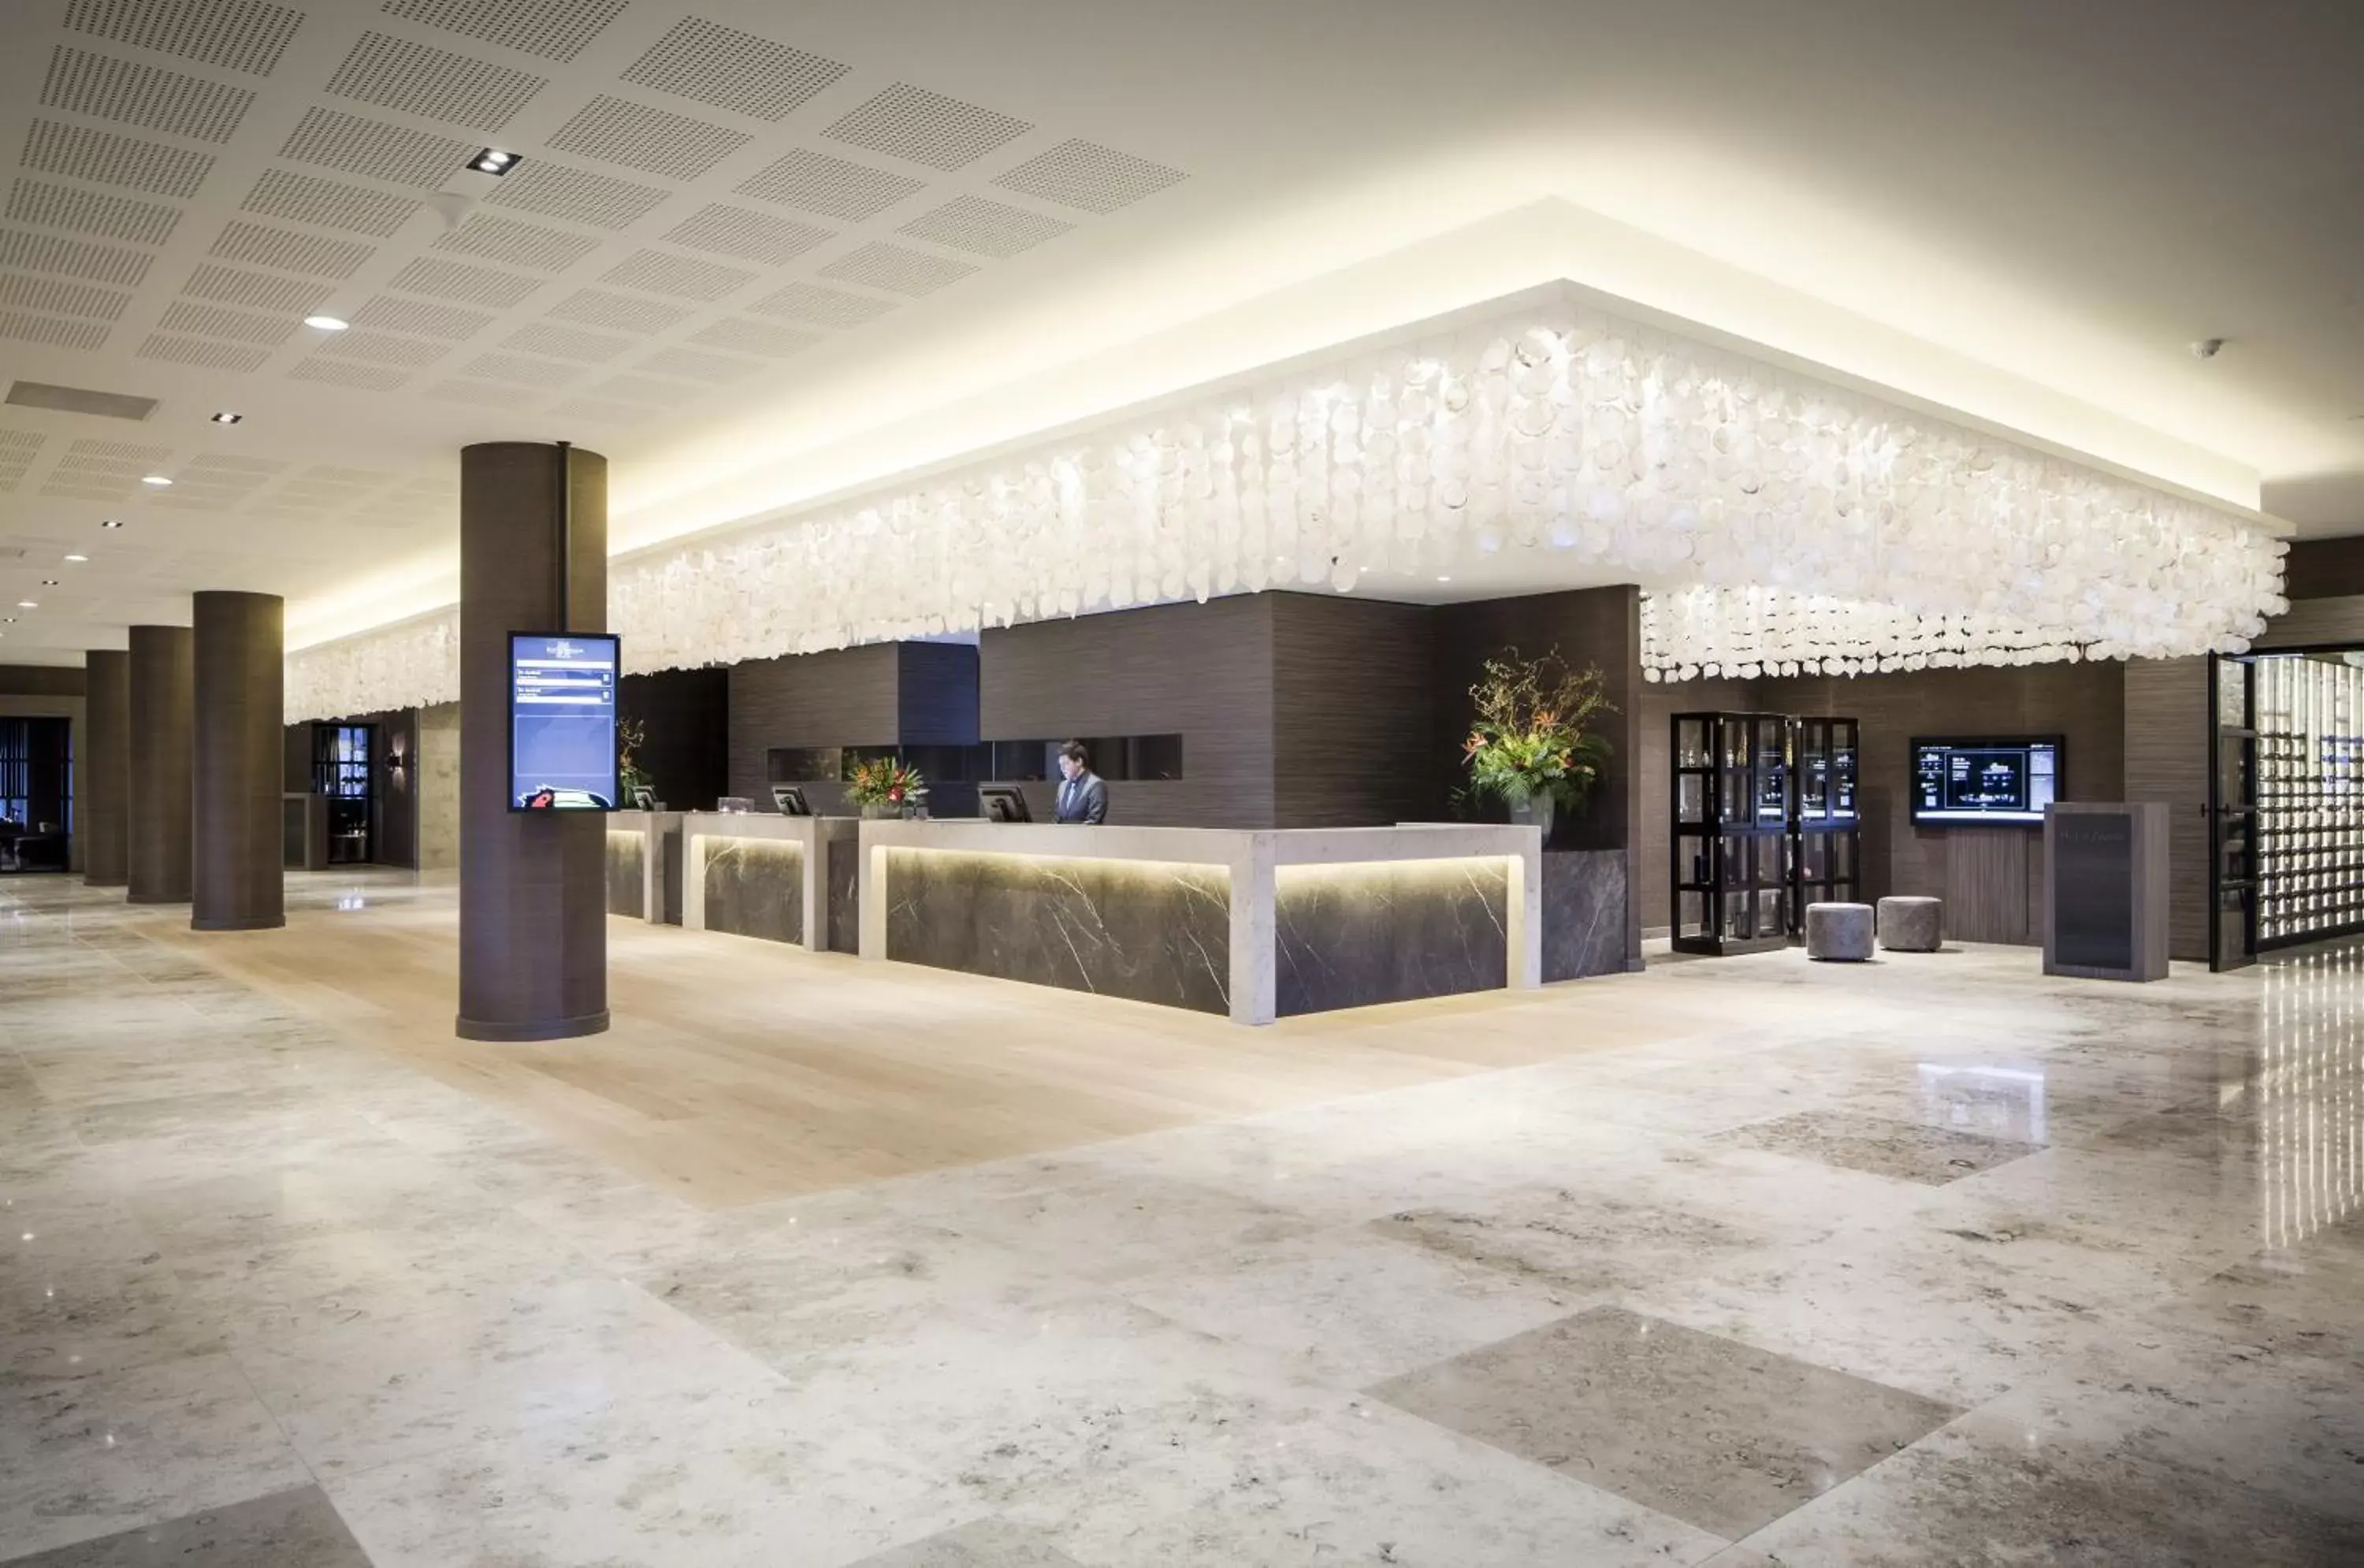 Lobby or reception in Van Der Valk Hotel Zwolle